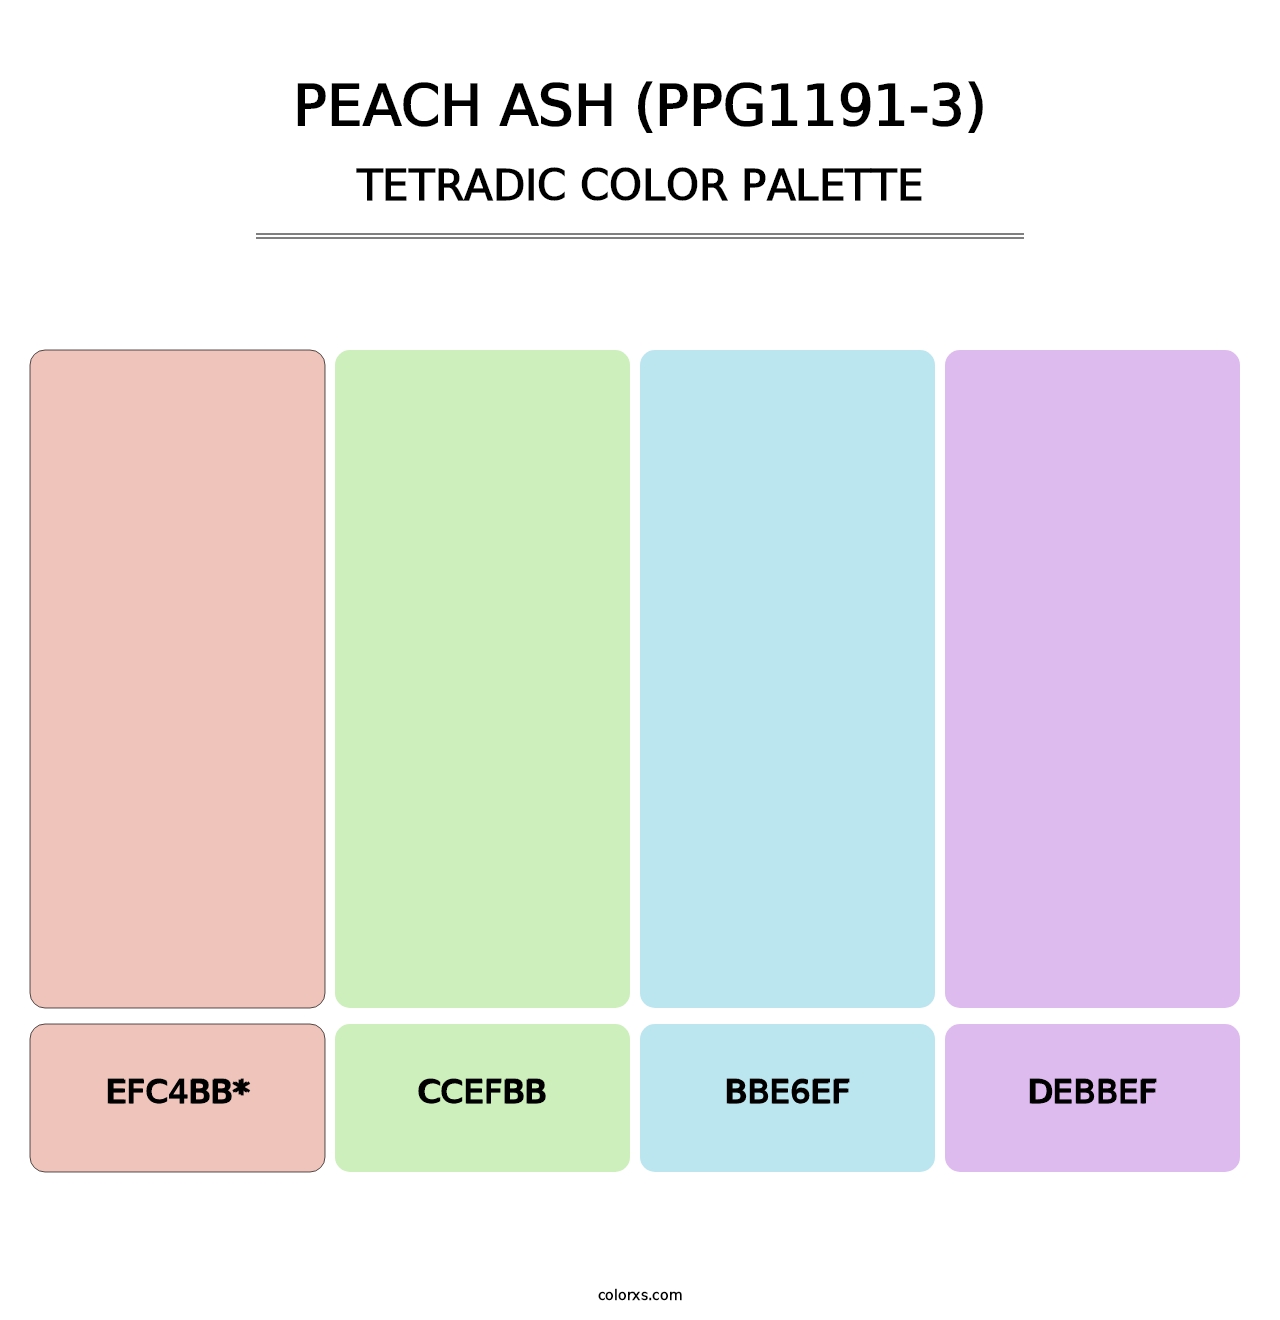 Peach Ash (PPG1191-3) - Tetradic Color Palette